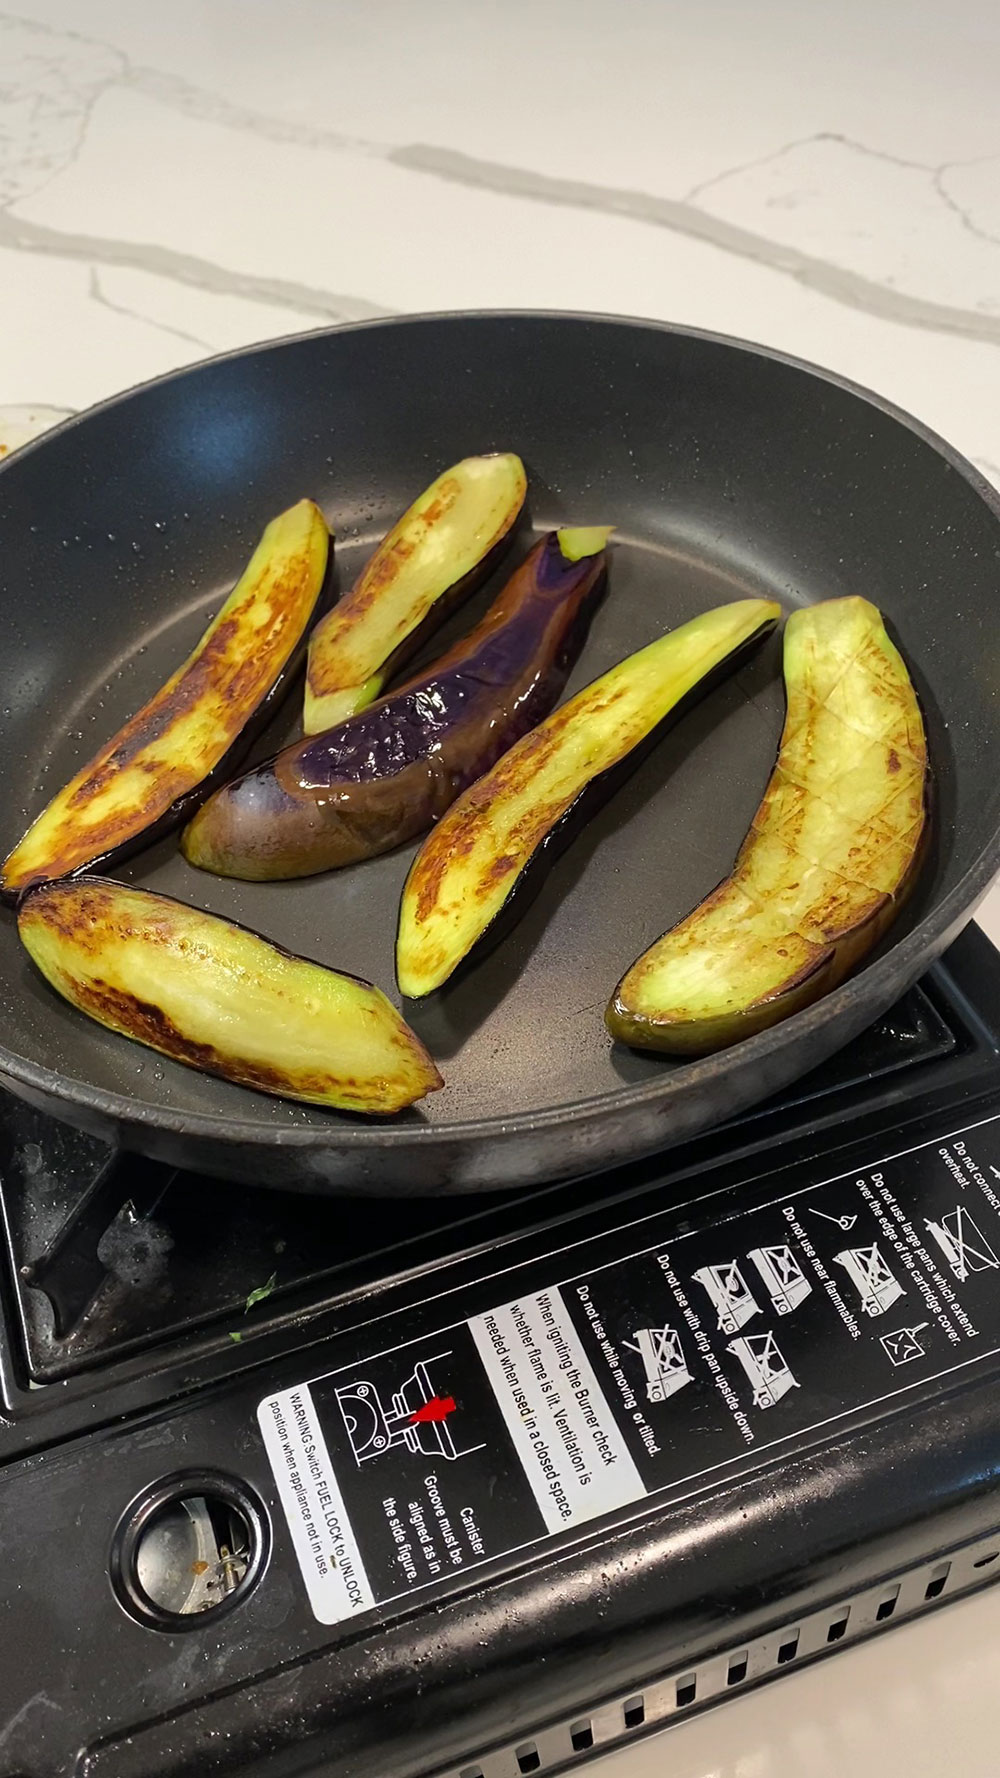 Pan-frying eggplants